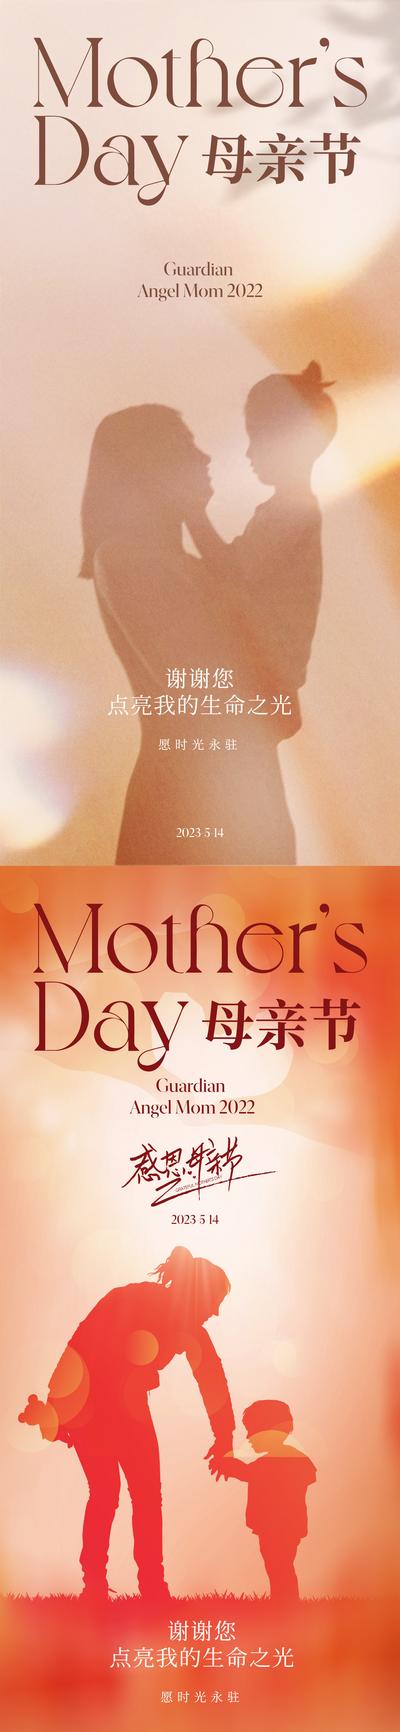 南门网 海报 房地产 公历节日 母亲节 剪影 母女 拥抱 亲情 温馨 时光 高级 唯美 妈妈